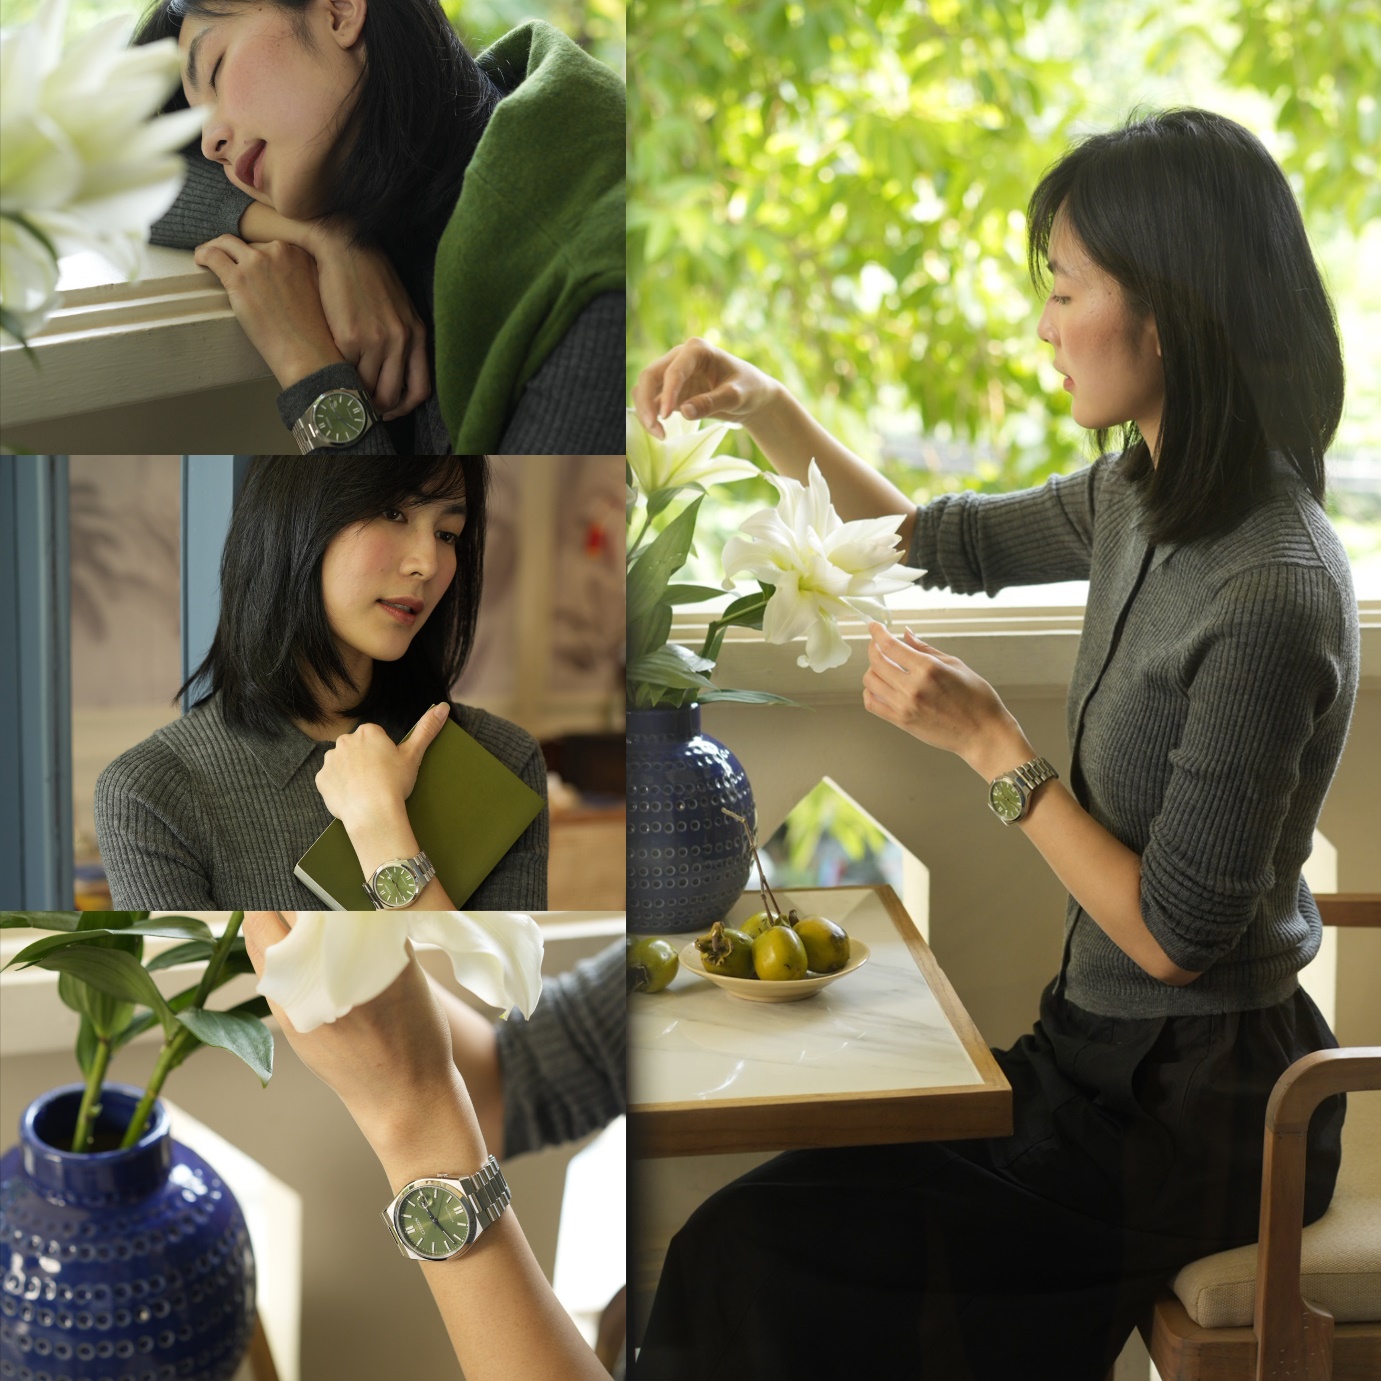 Học cách chọn màu sắc đồng hồ thể hiện cá tính chuẩn như sao Việt - Ảnh 4.